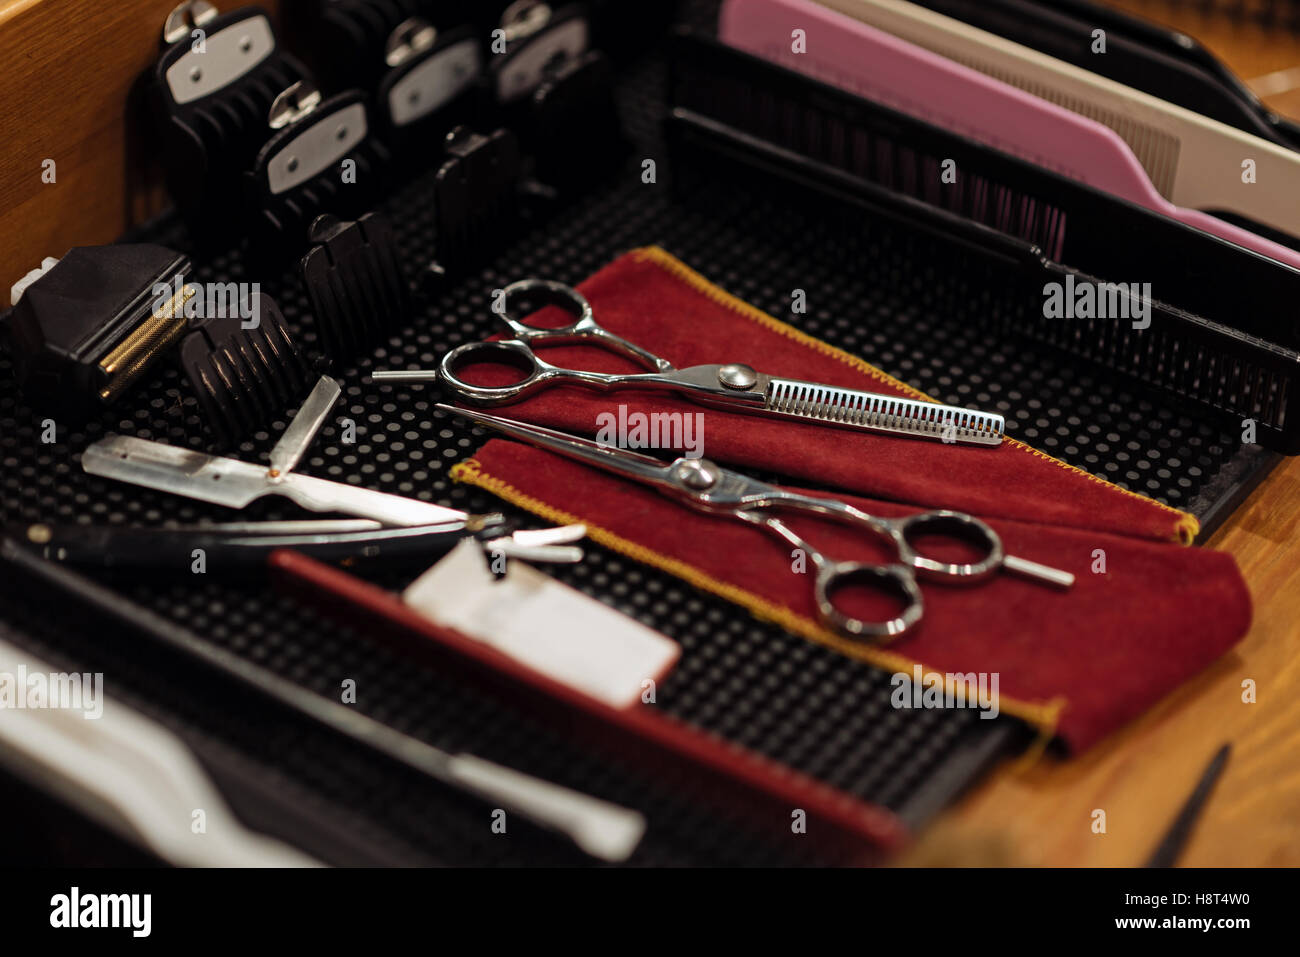 Professional barbers immagini e fotografie stock ad alta risoluzione - Alamy